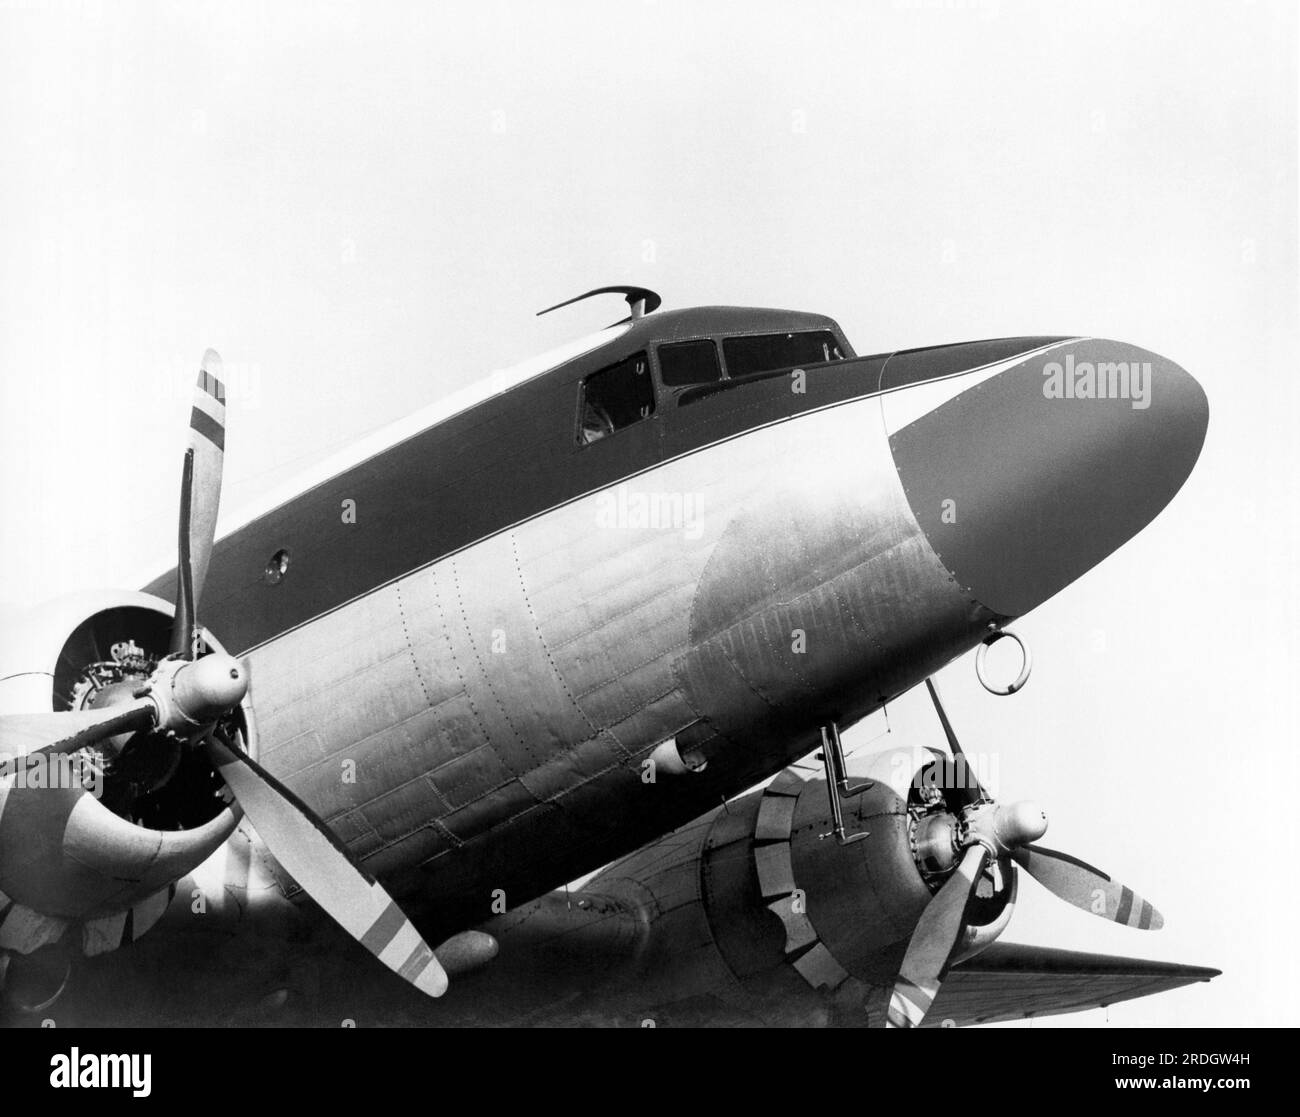 Los Angeles, Kalifornien c. 1951 Ein Business-DC-3-Flugzeug mit der neuen extra langen Nase, in der das RCA AVQ-10-Radarsystem untergebracht ist. Stockfoto